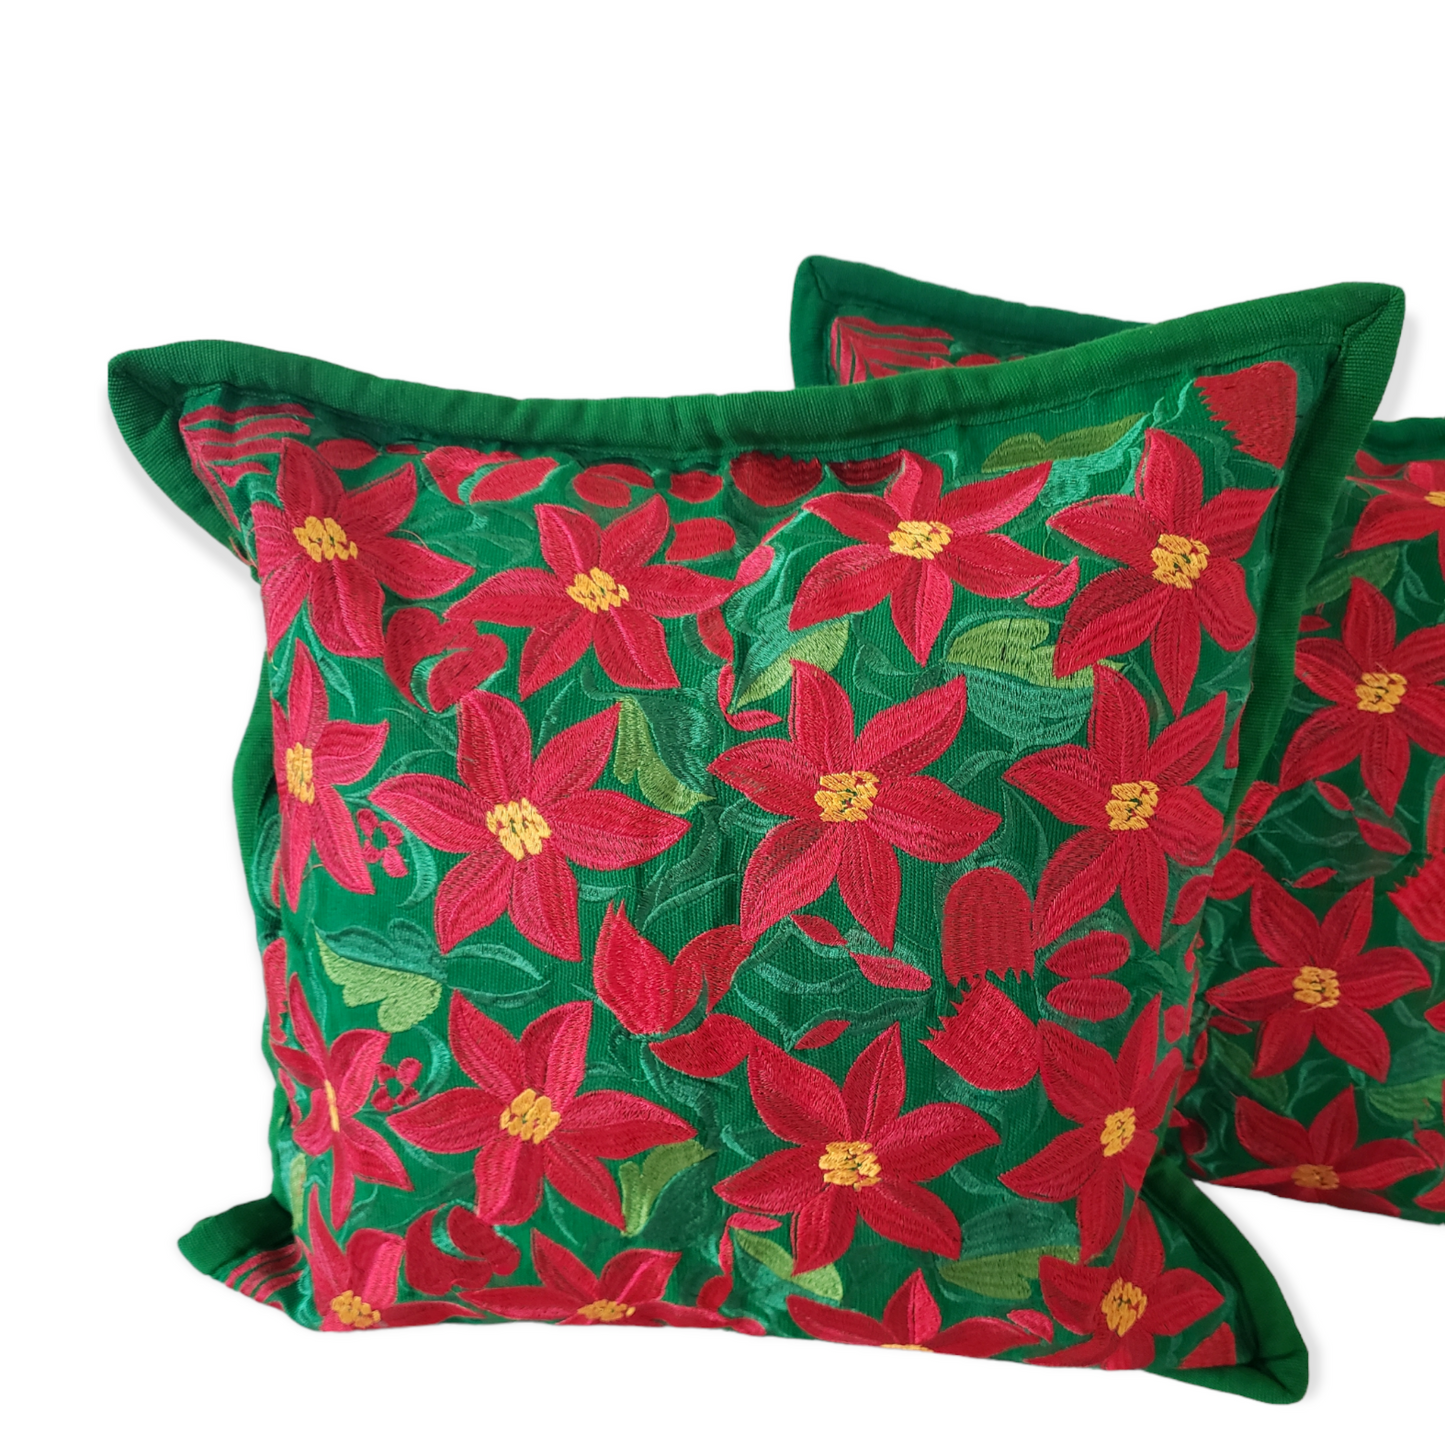 Christmas Pillow Cover Oaxaca Handmade Embroidered Poinsettia Nochebuena